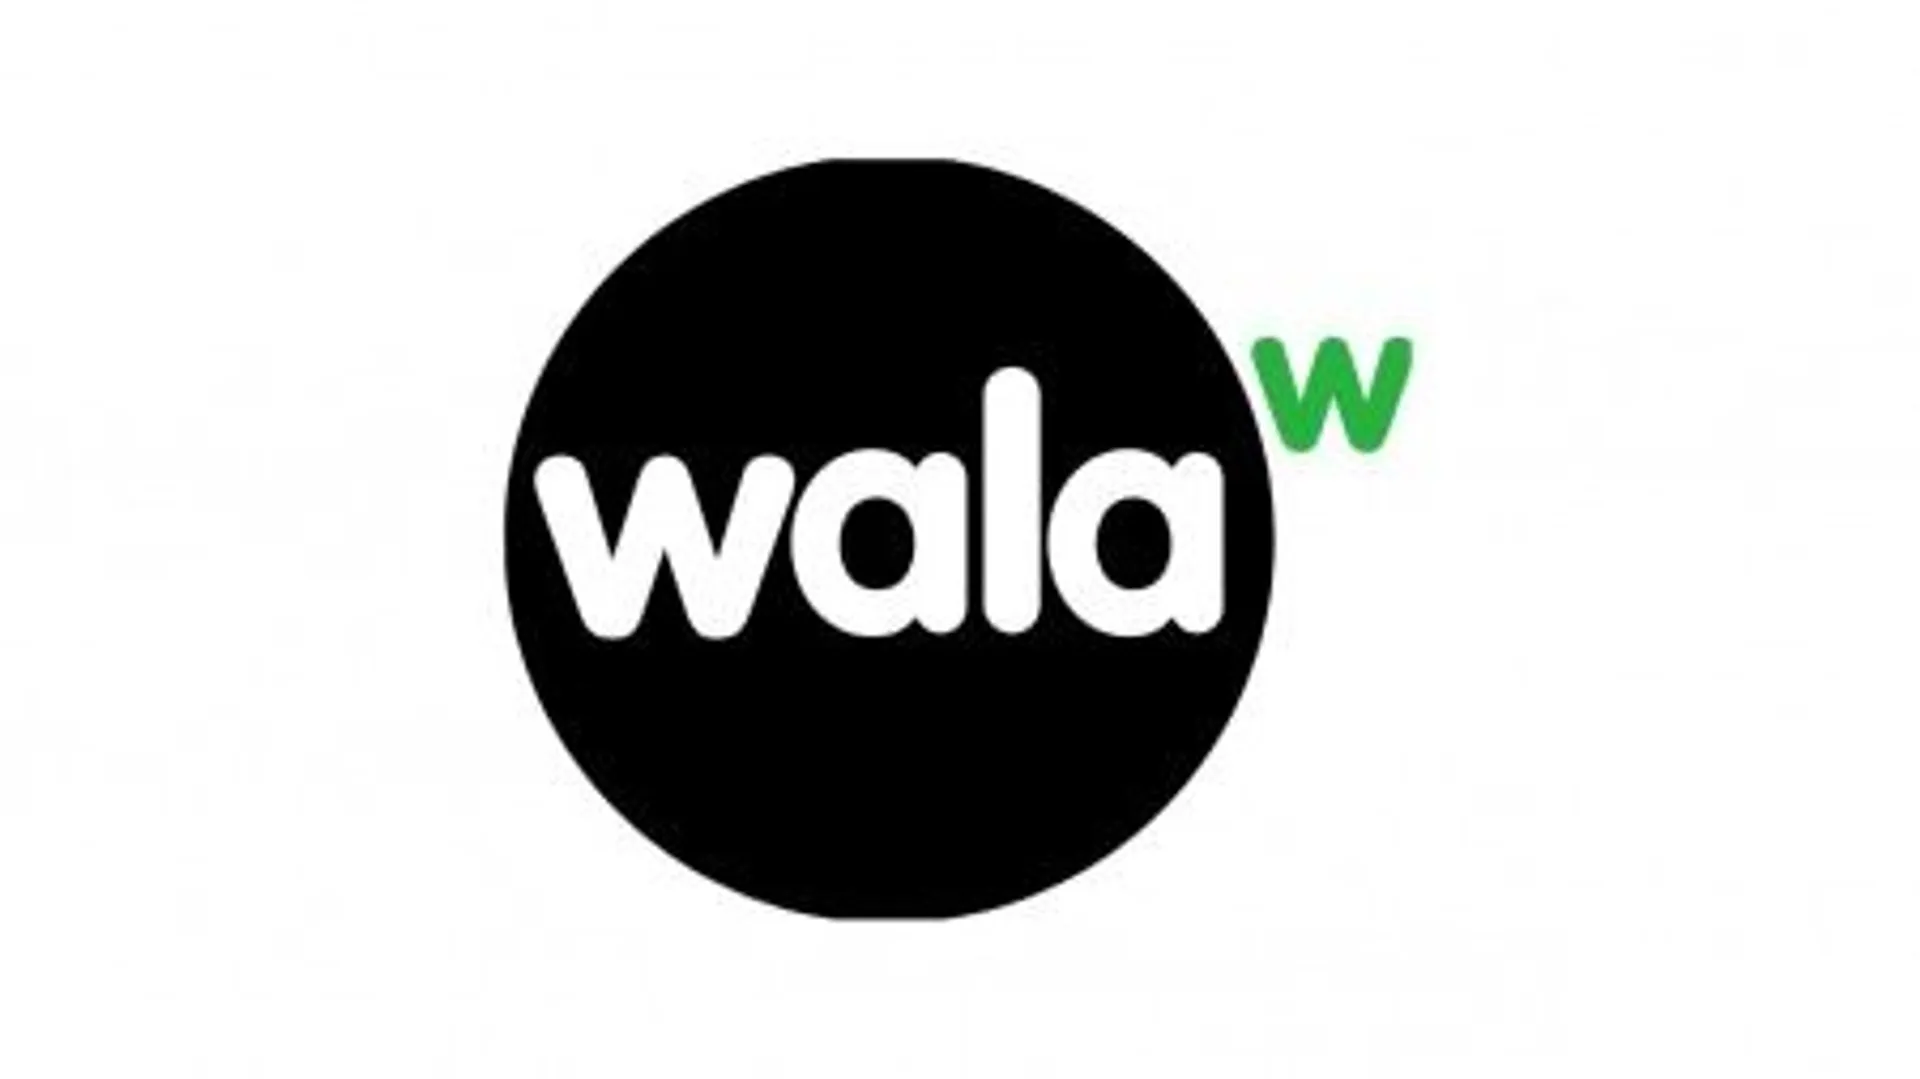 WALA logo